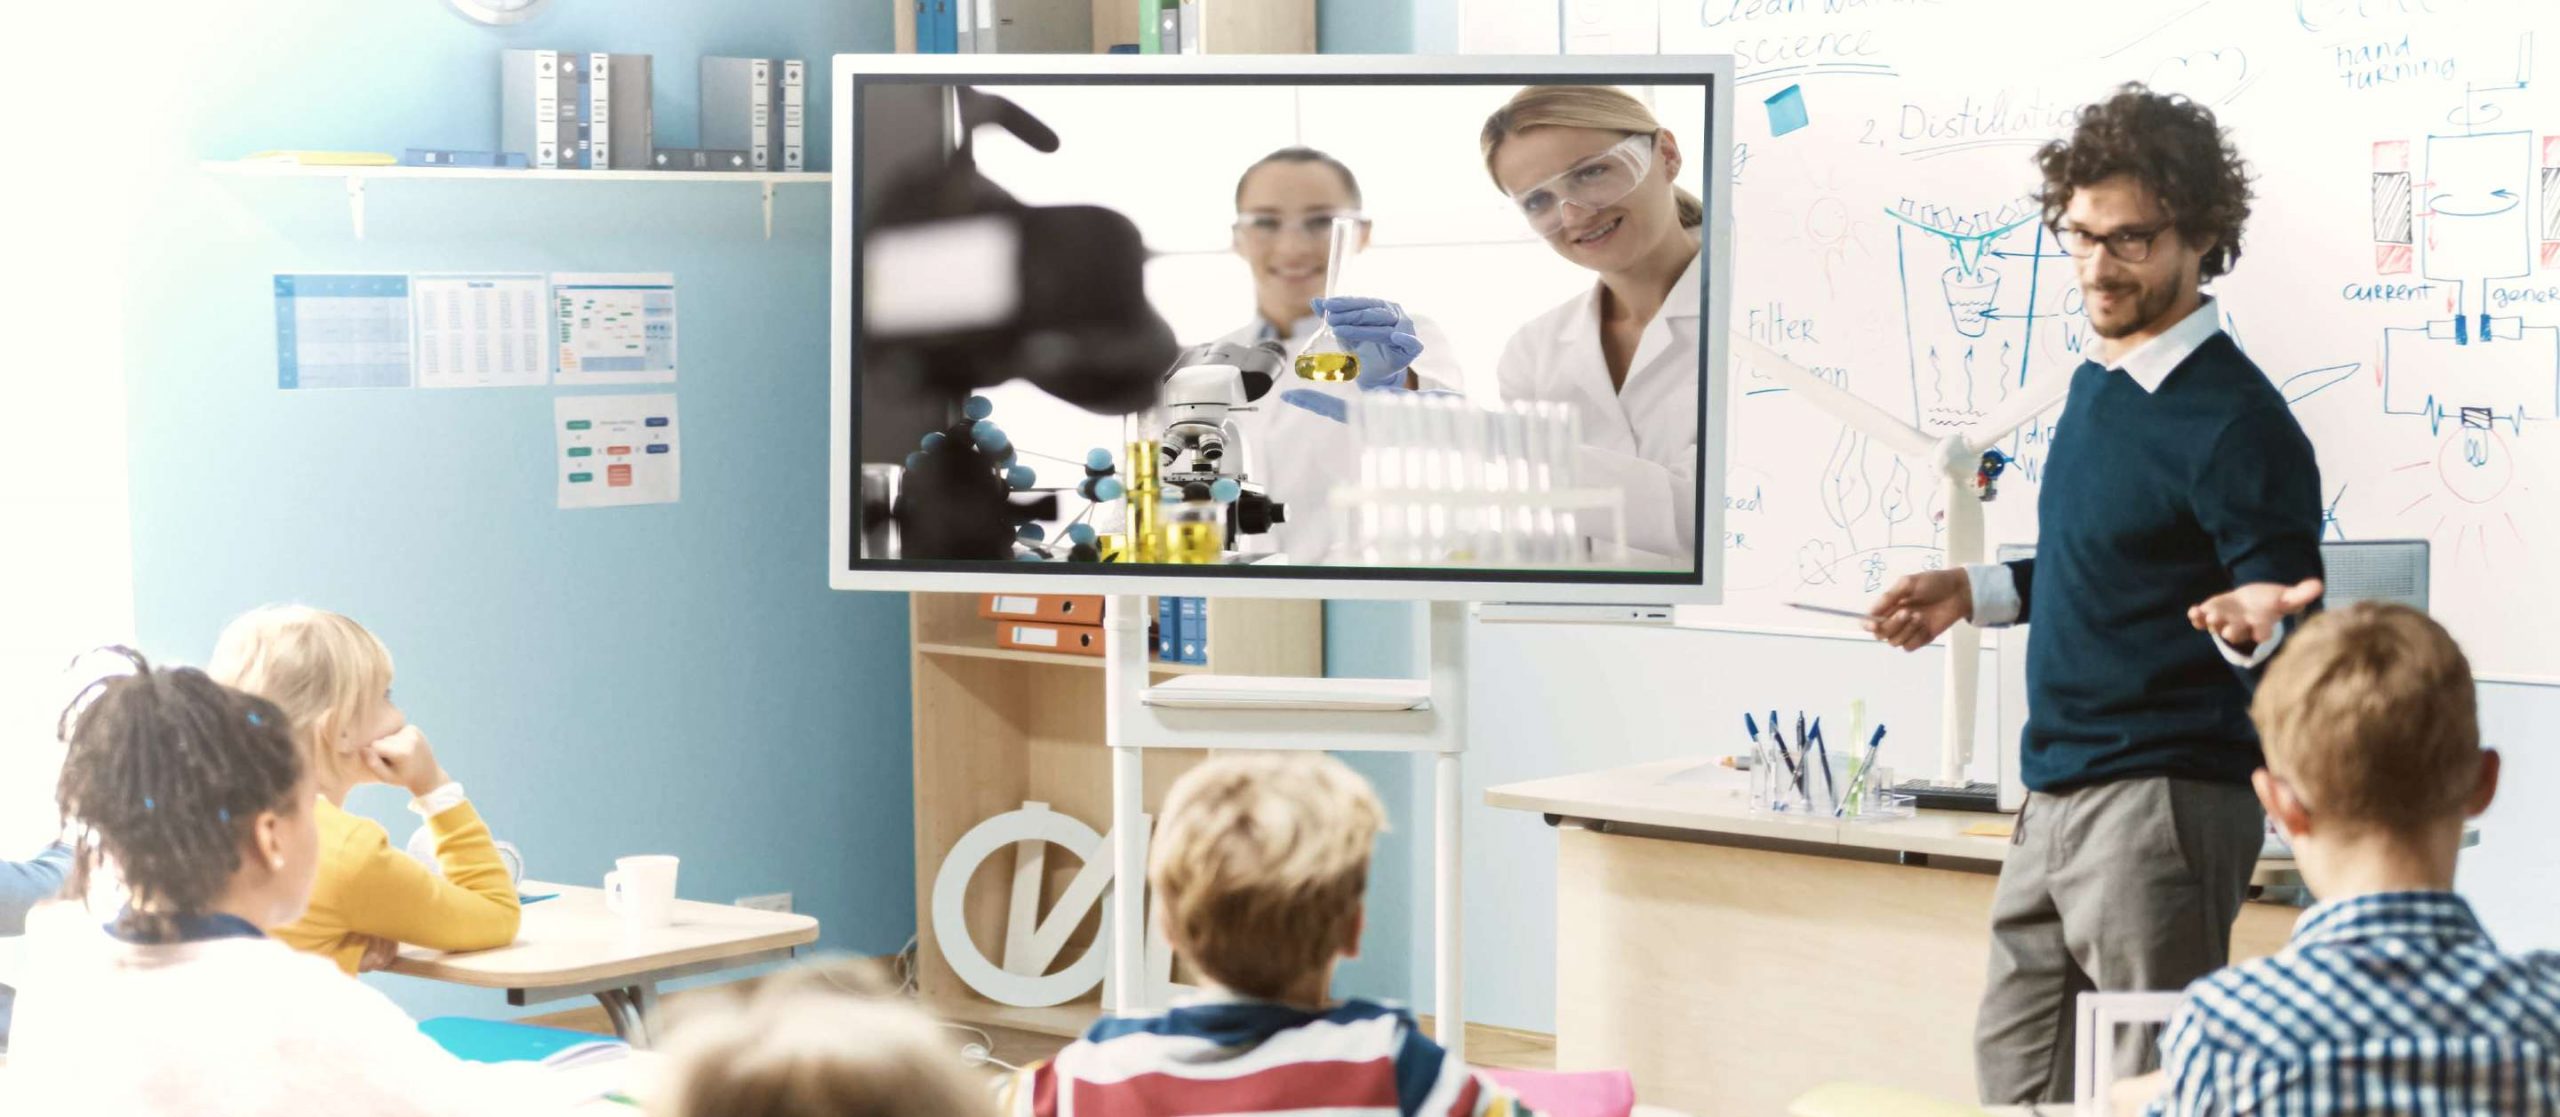 RIALE-EU. L'immagine è presa in una classe, si vedono dei bambini che su una TV seguono in diretta l'esperimento fatto in un laboratorio remoto